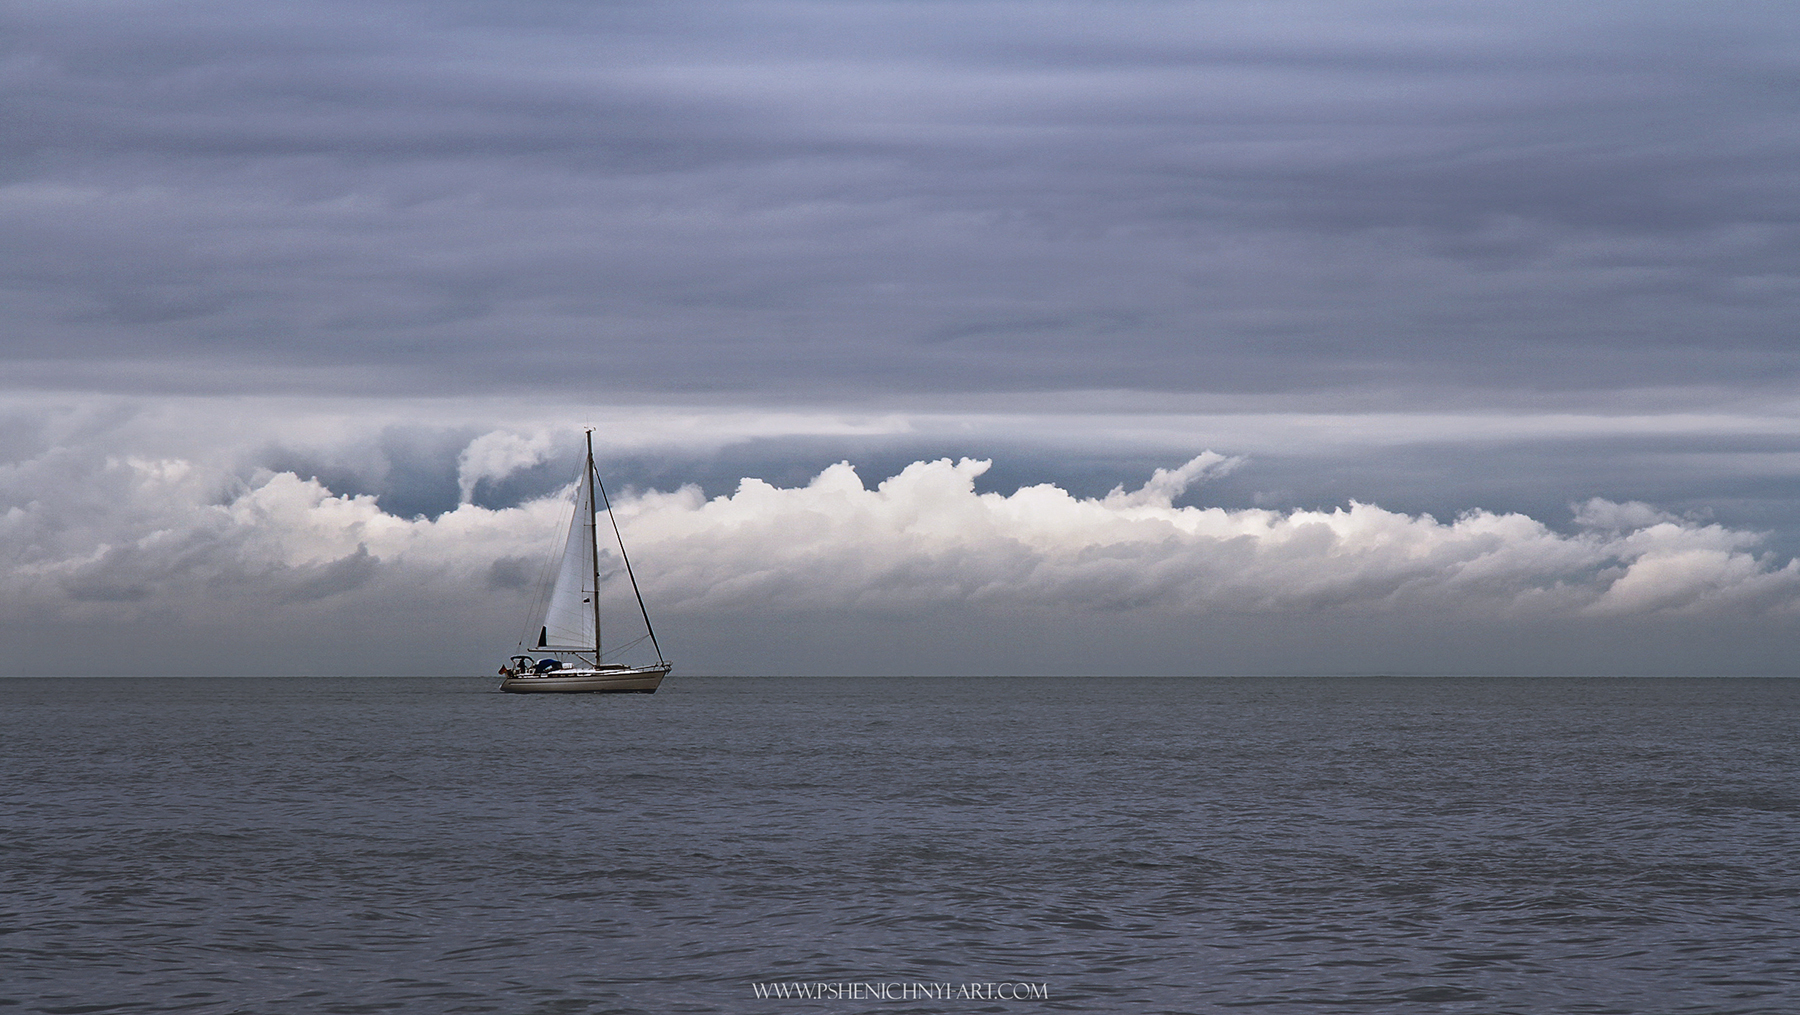 яхта, парус, море, горизонт, облака, одинокий, пейзаж, минимализм, Пшеничный Андрей